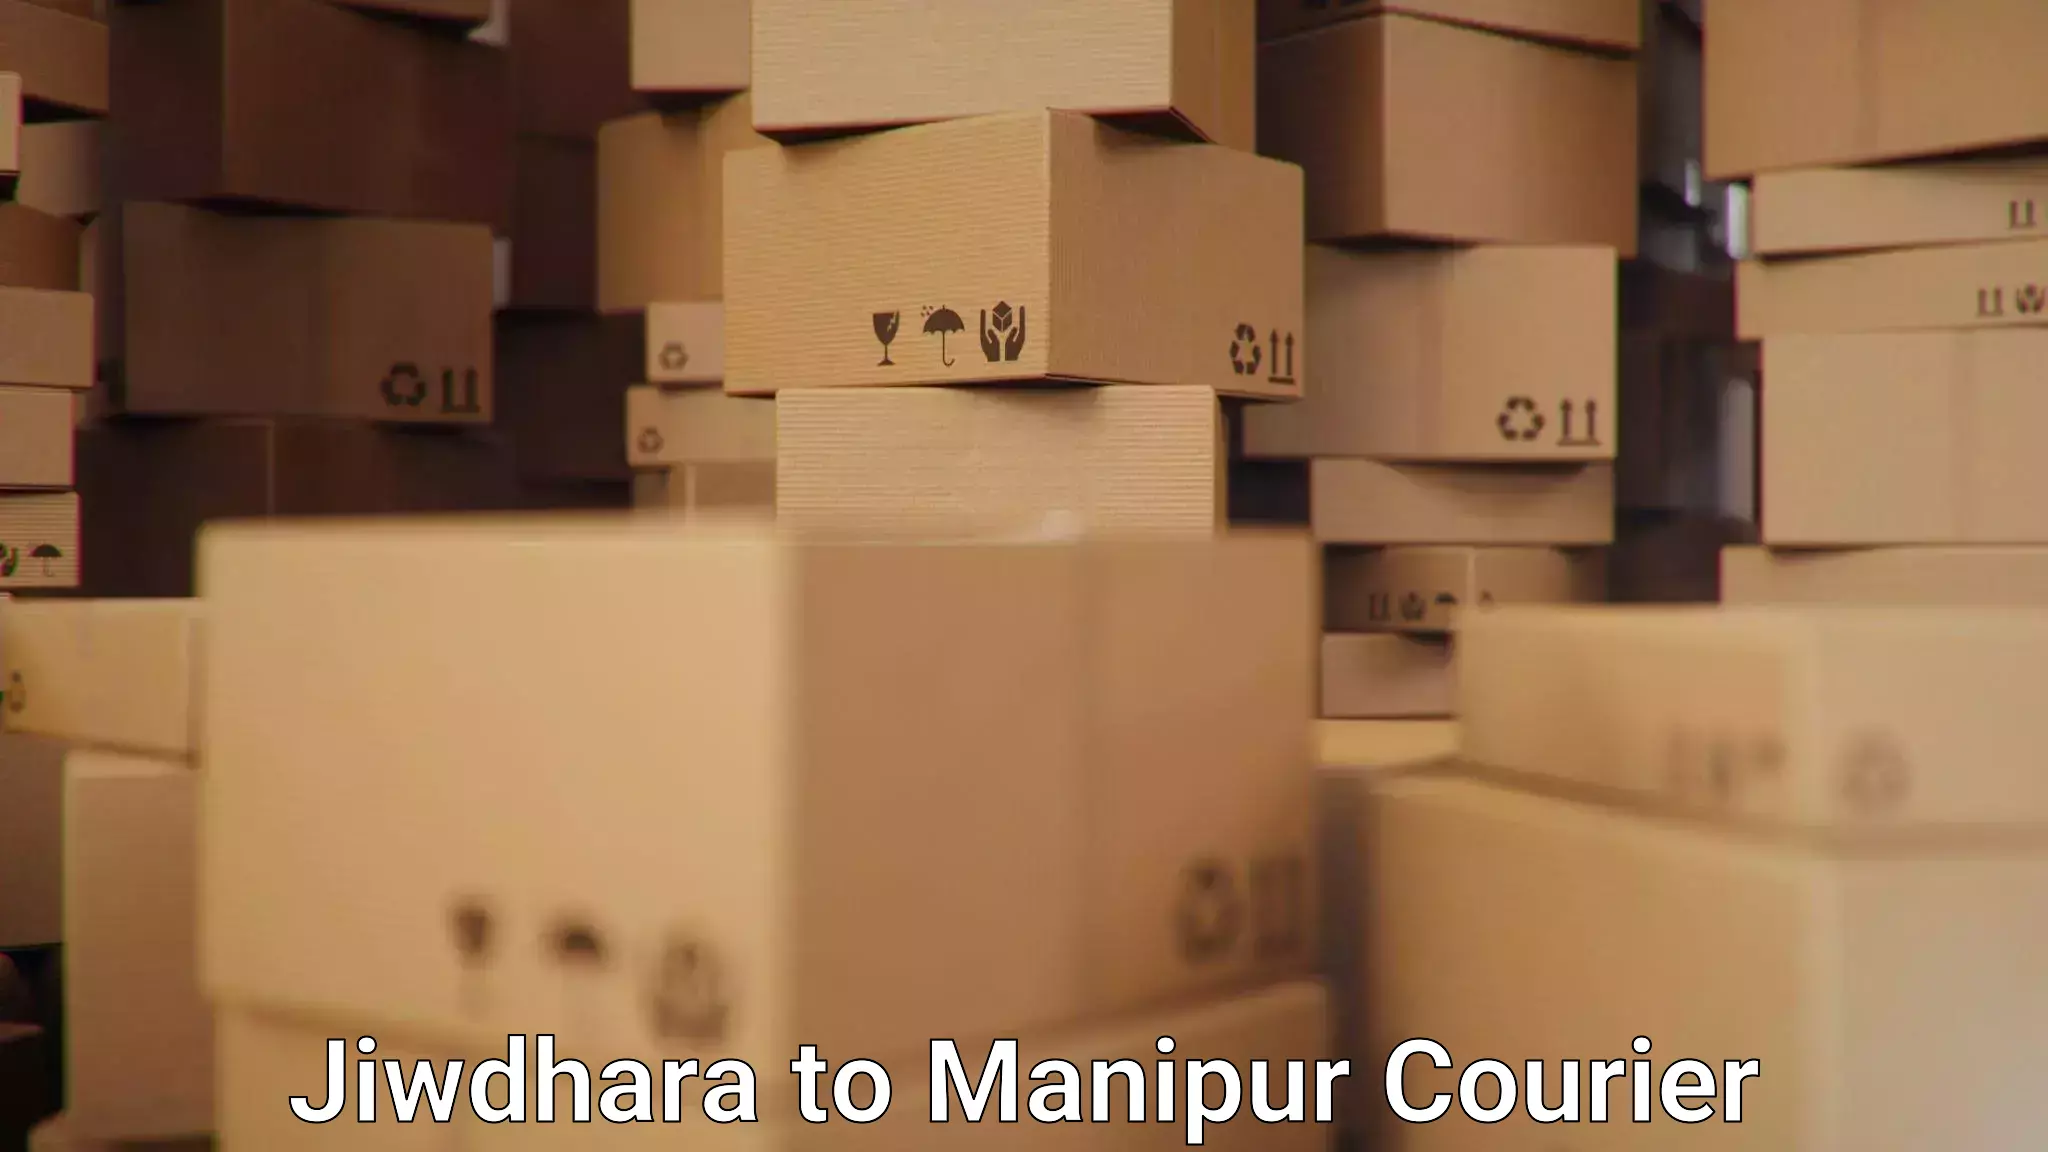 High-speed parcel service Jiwdhara to Manipur